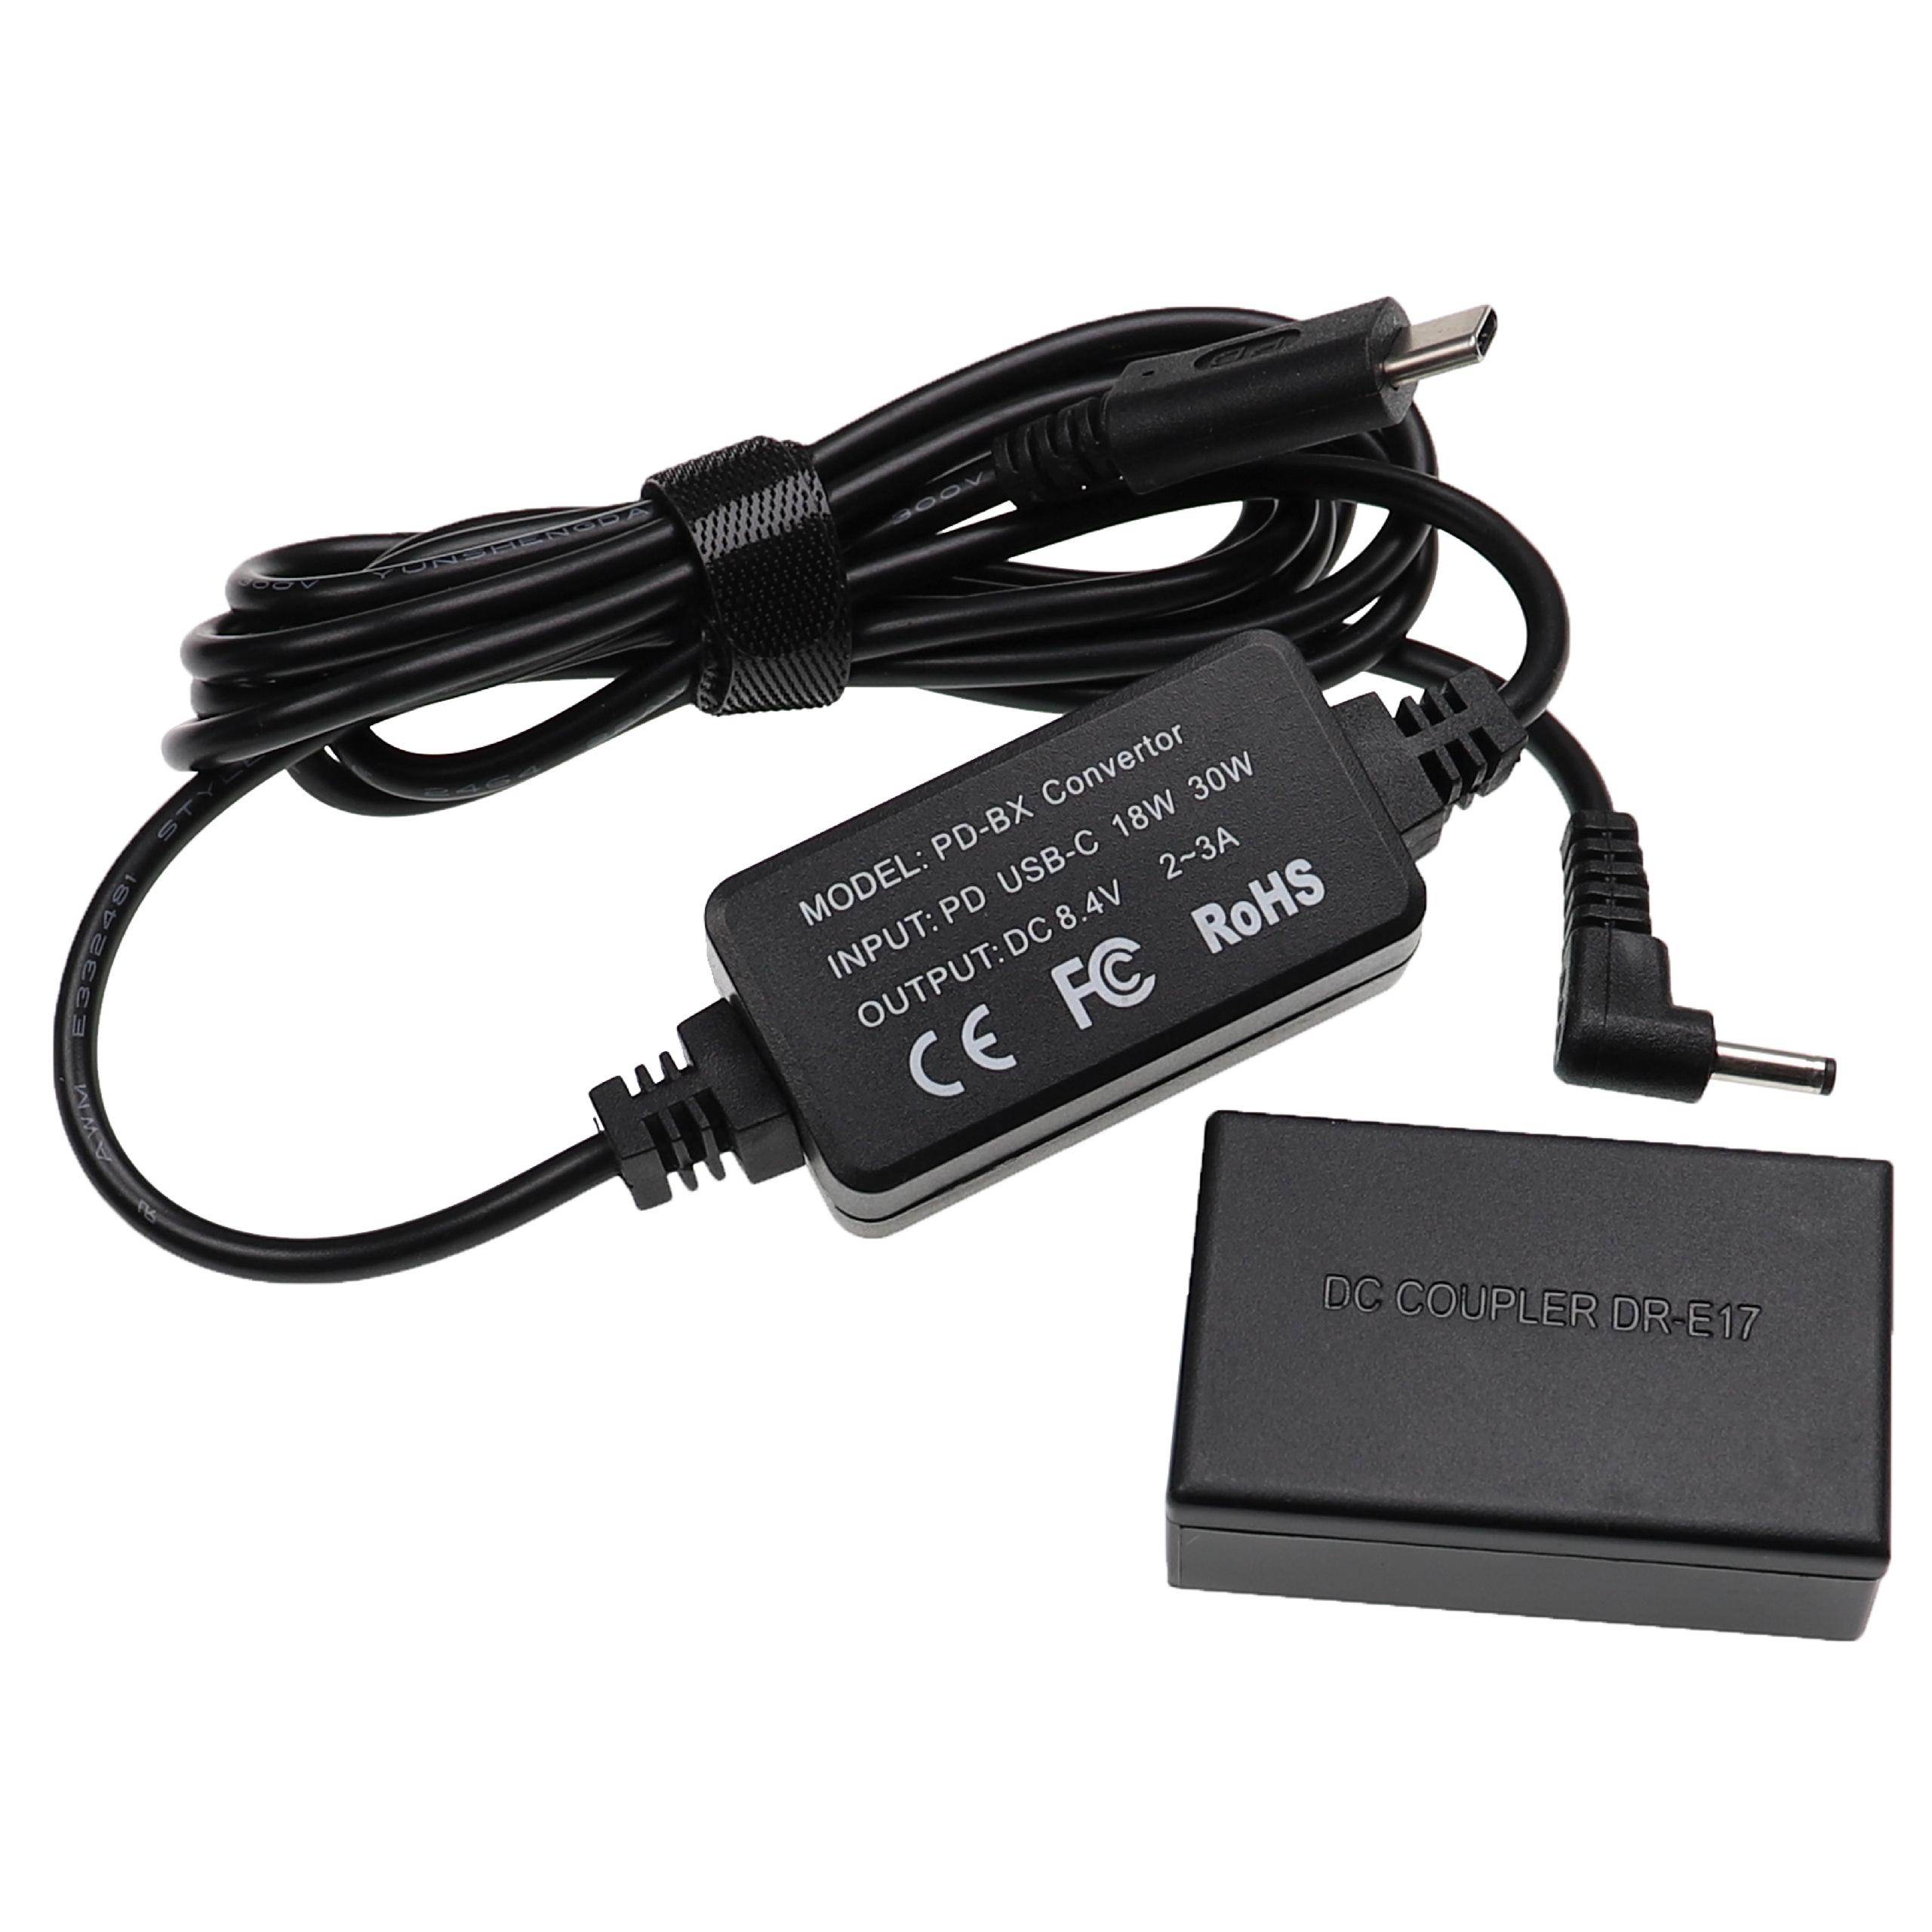 USB Power Supply replaces ACK-E17 for Camera + DC Coupler as Canon DR-E17 - 2 m, 8.4 V 3.0 A